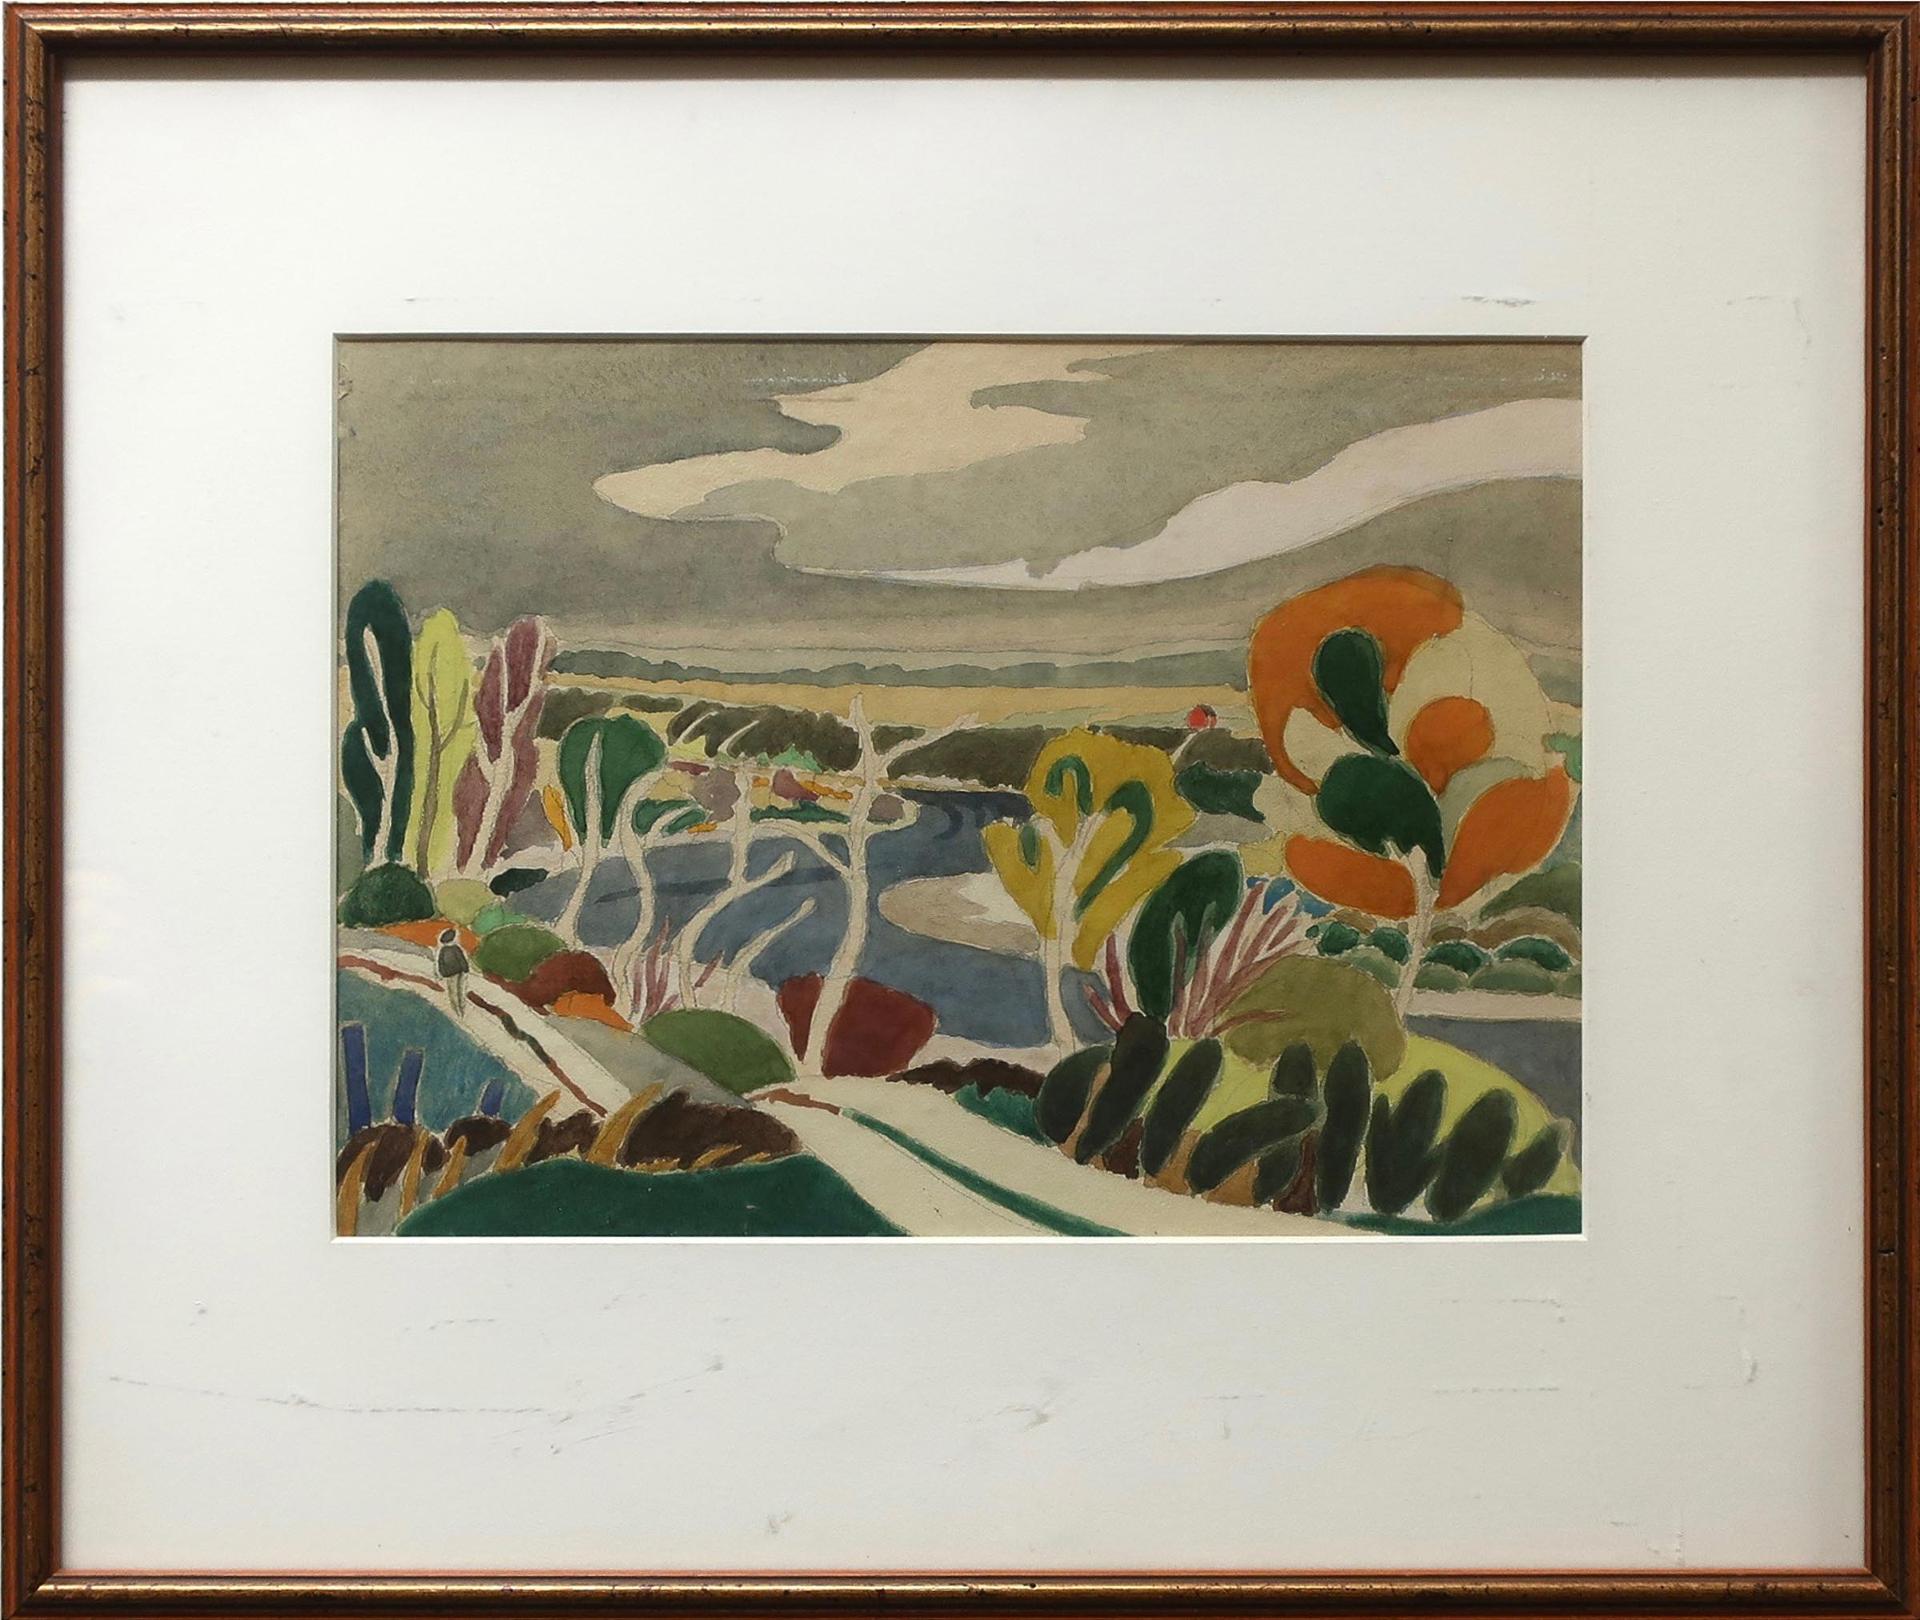 Stanley Ernest Brunst (1894-1962) - The River Valley